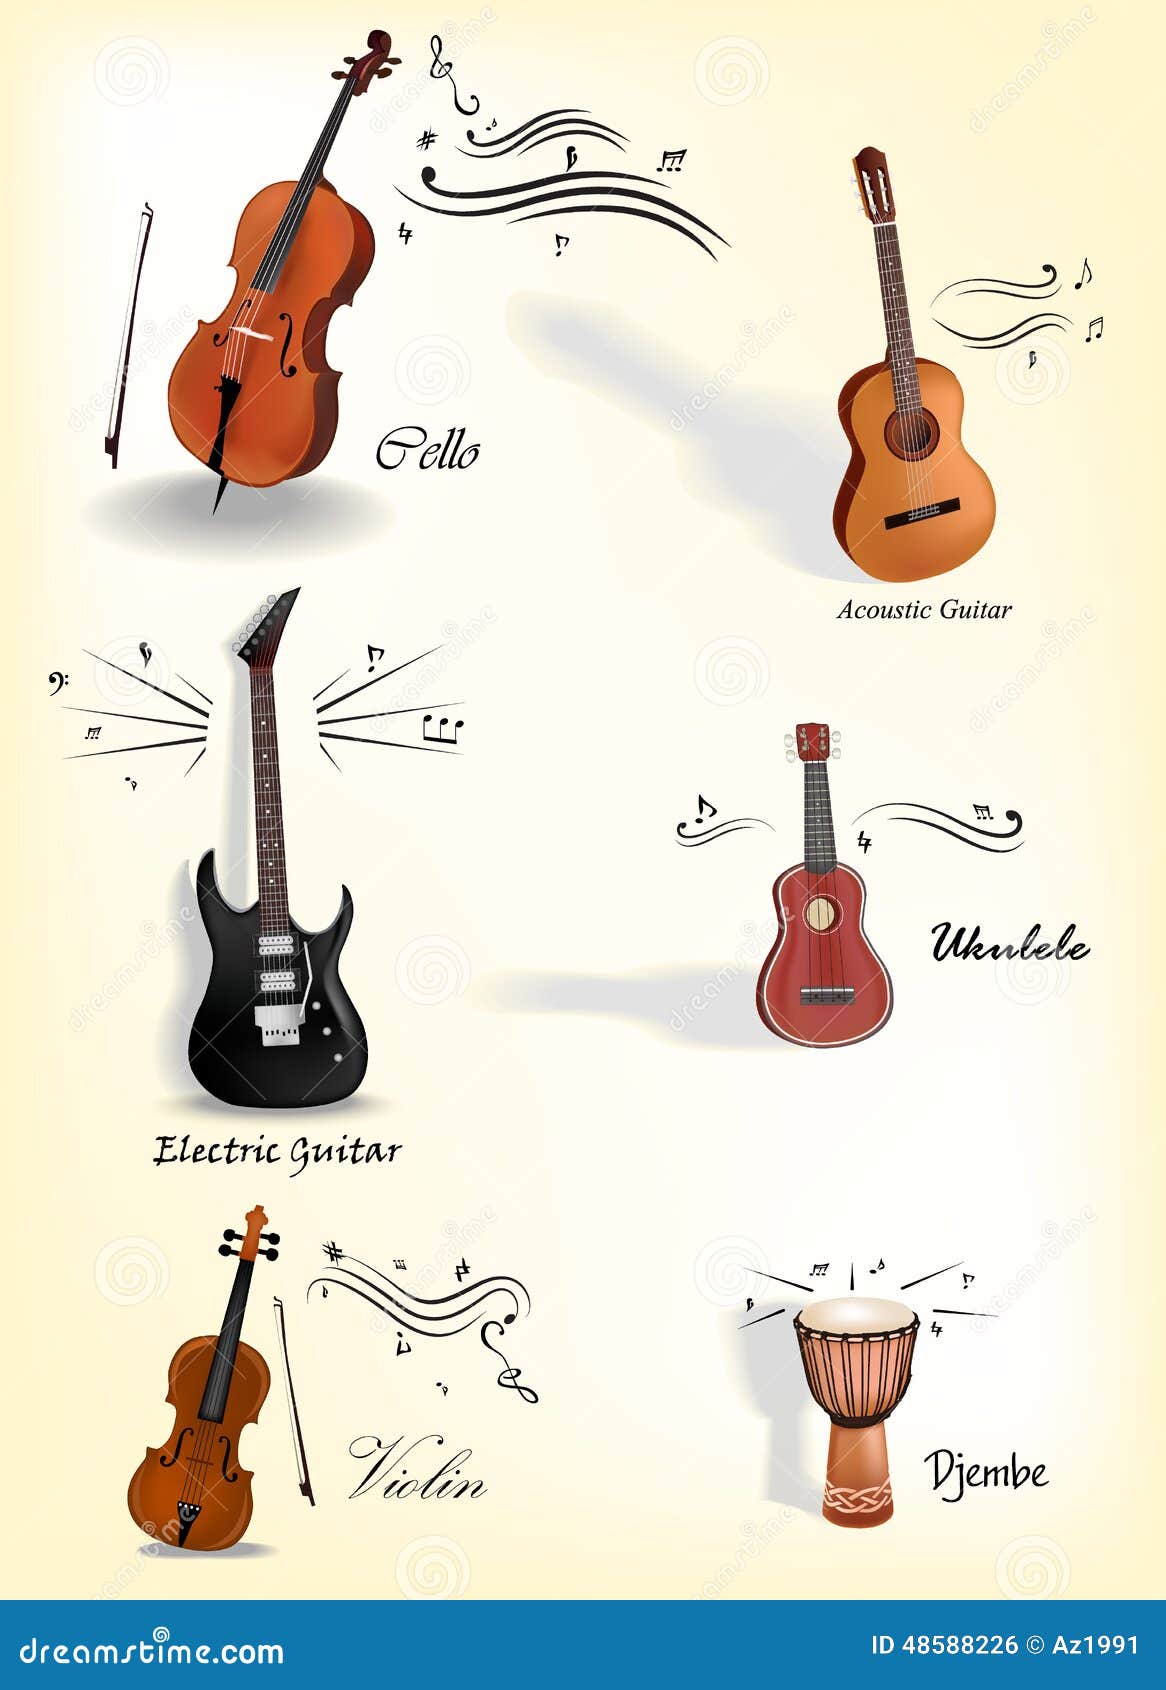 Klassieke Muziekinstrumenten Vector Illustratie Illustration baarzen, band: 48588226